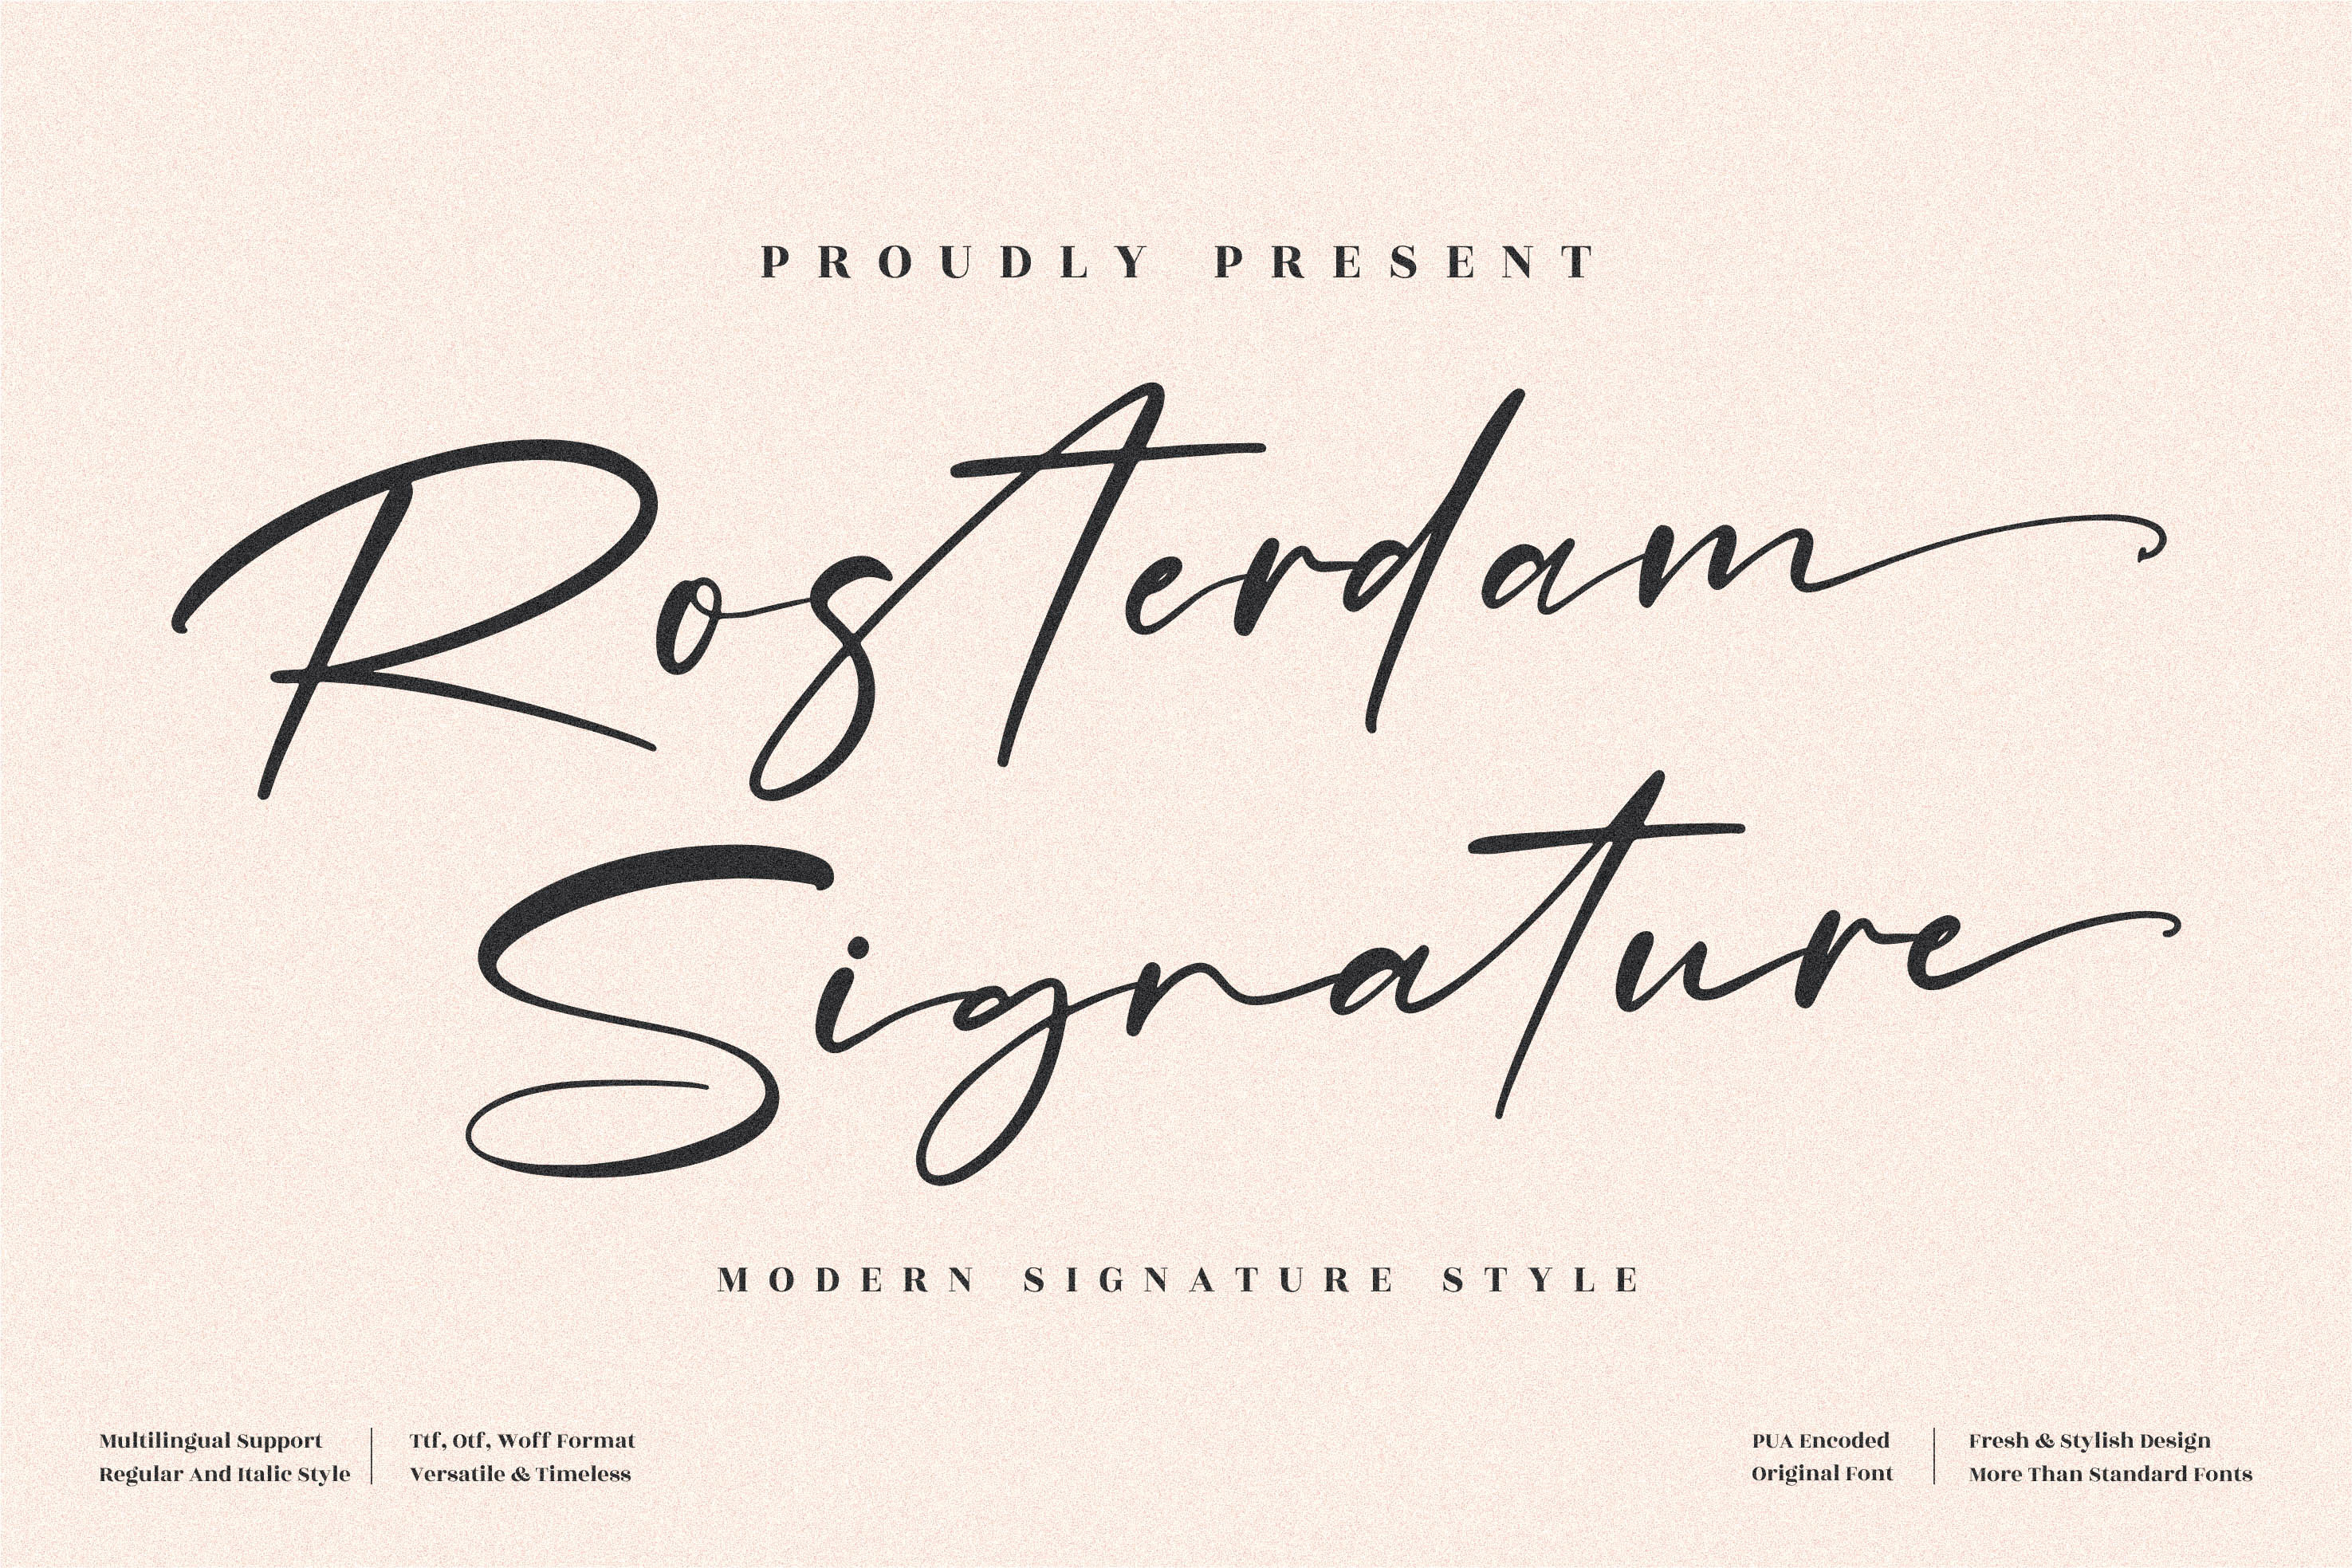 Rosterdam Signature